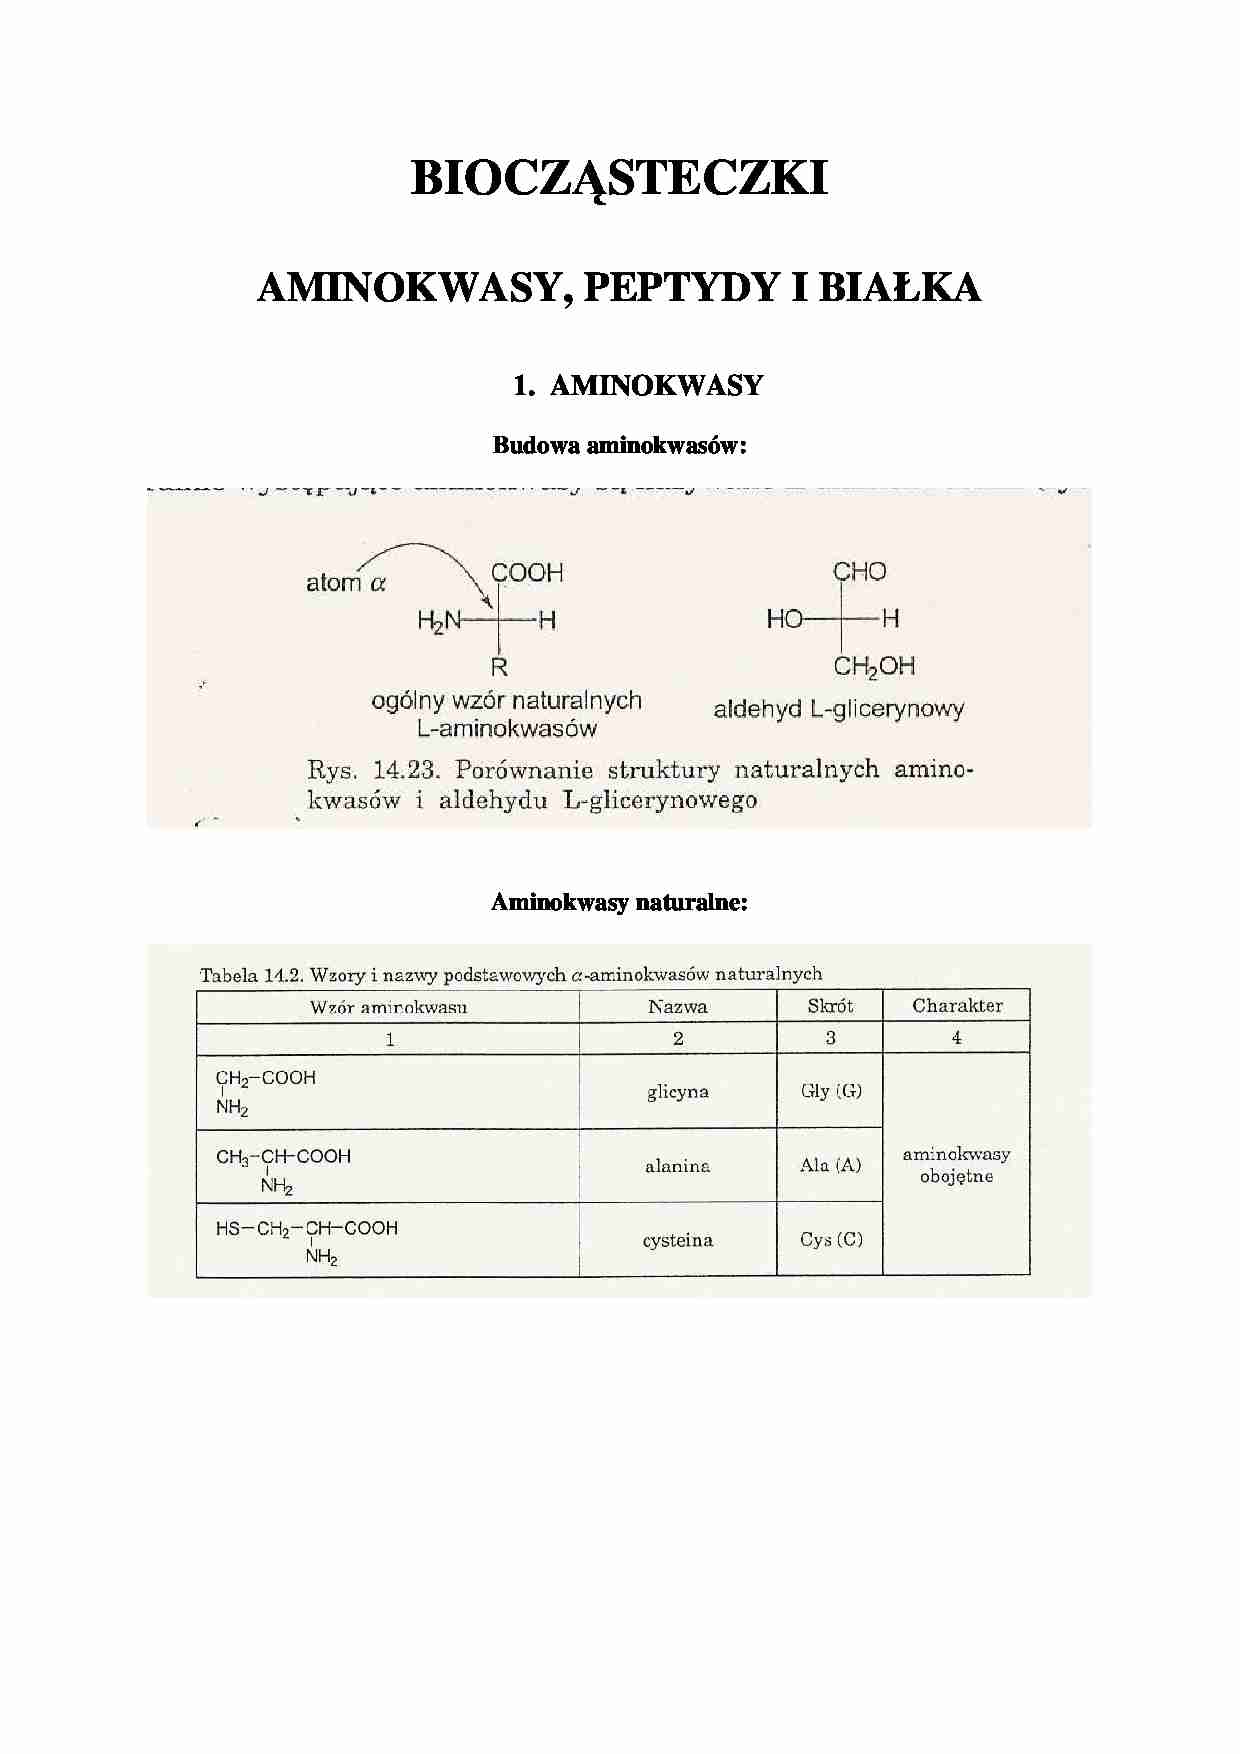 Aminokwasy, peptydy i białka - wykład - strona 1